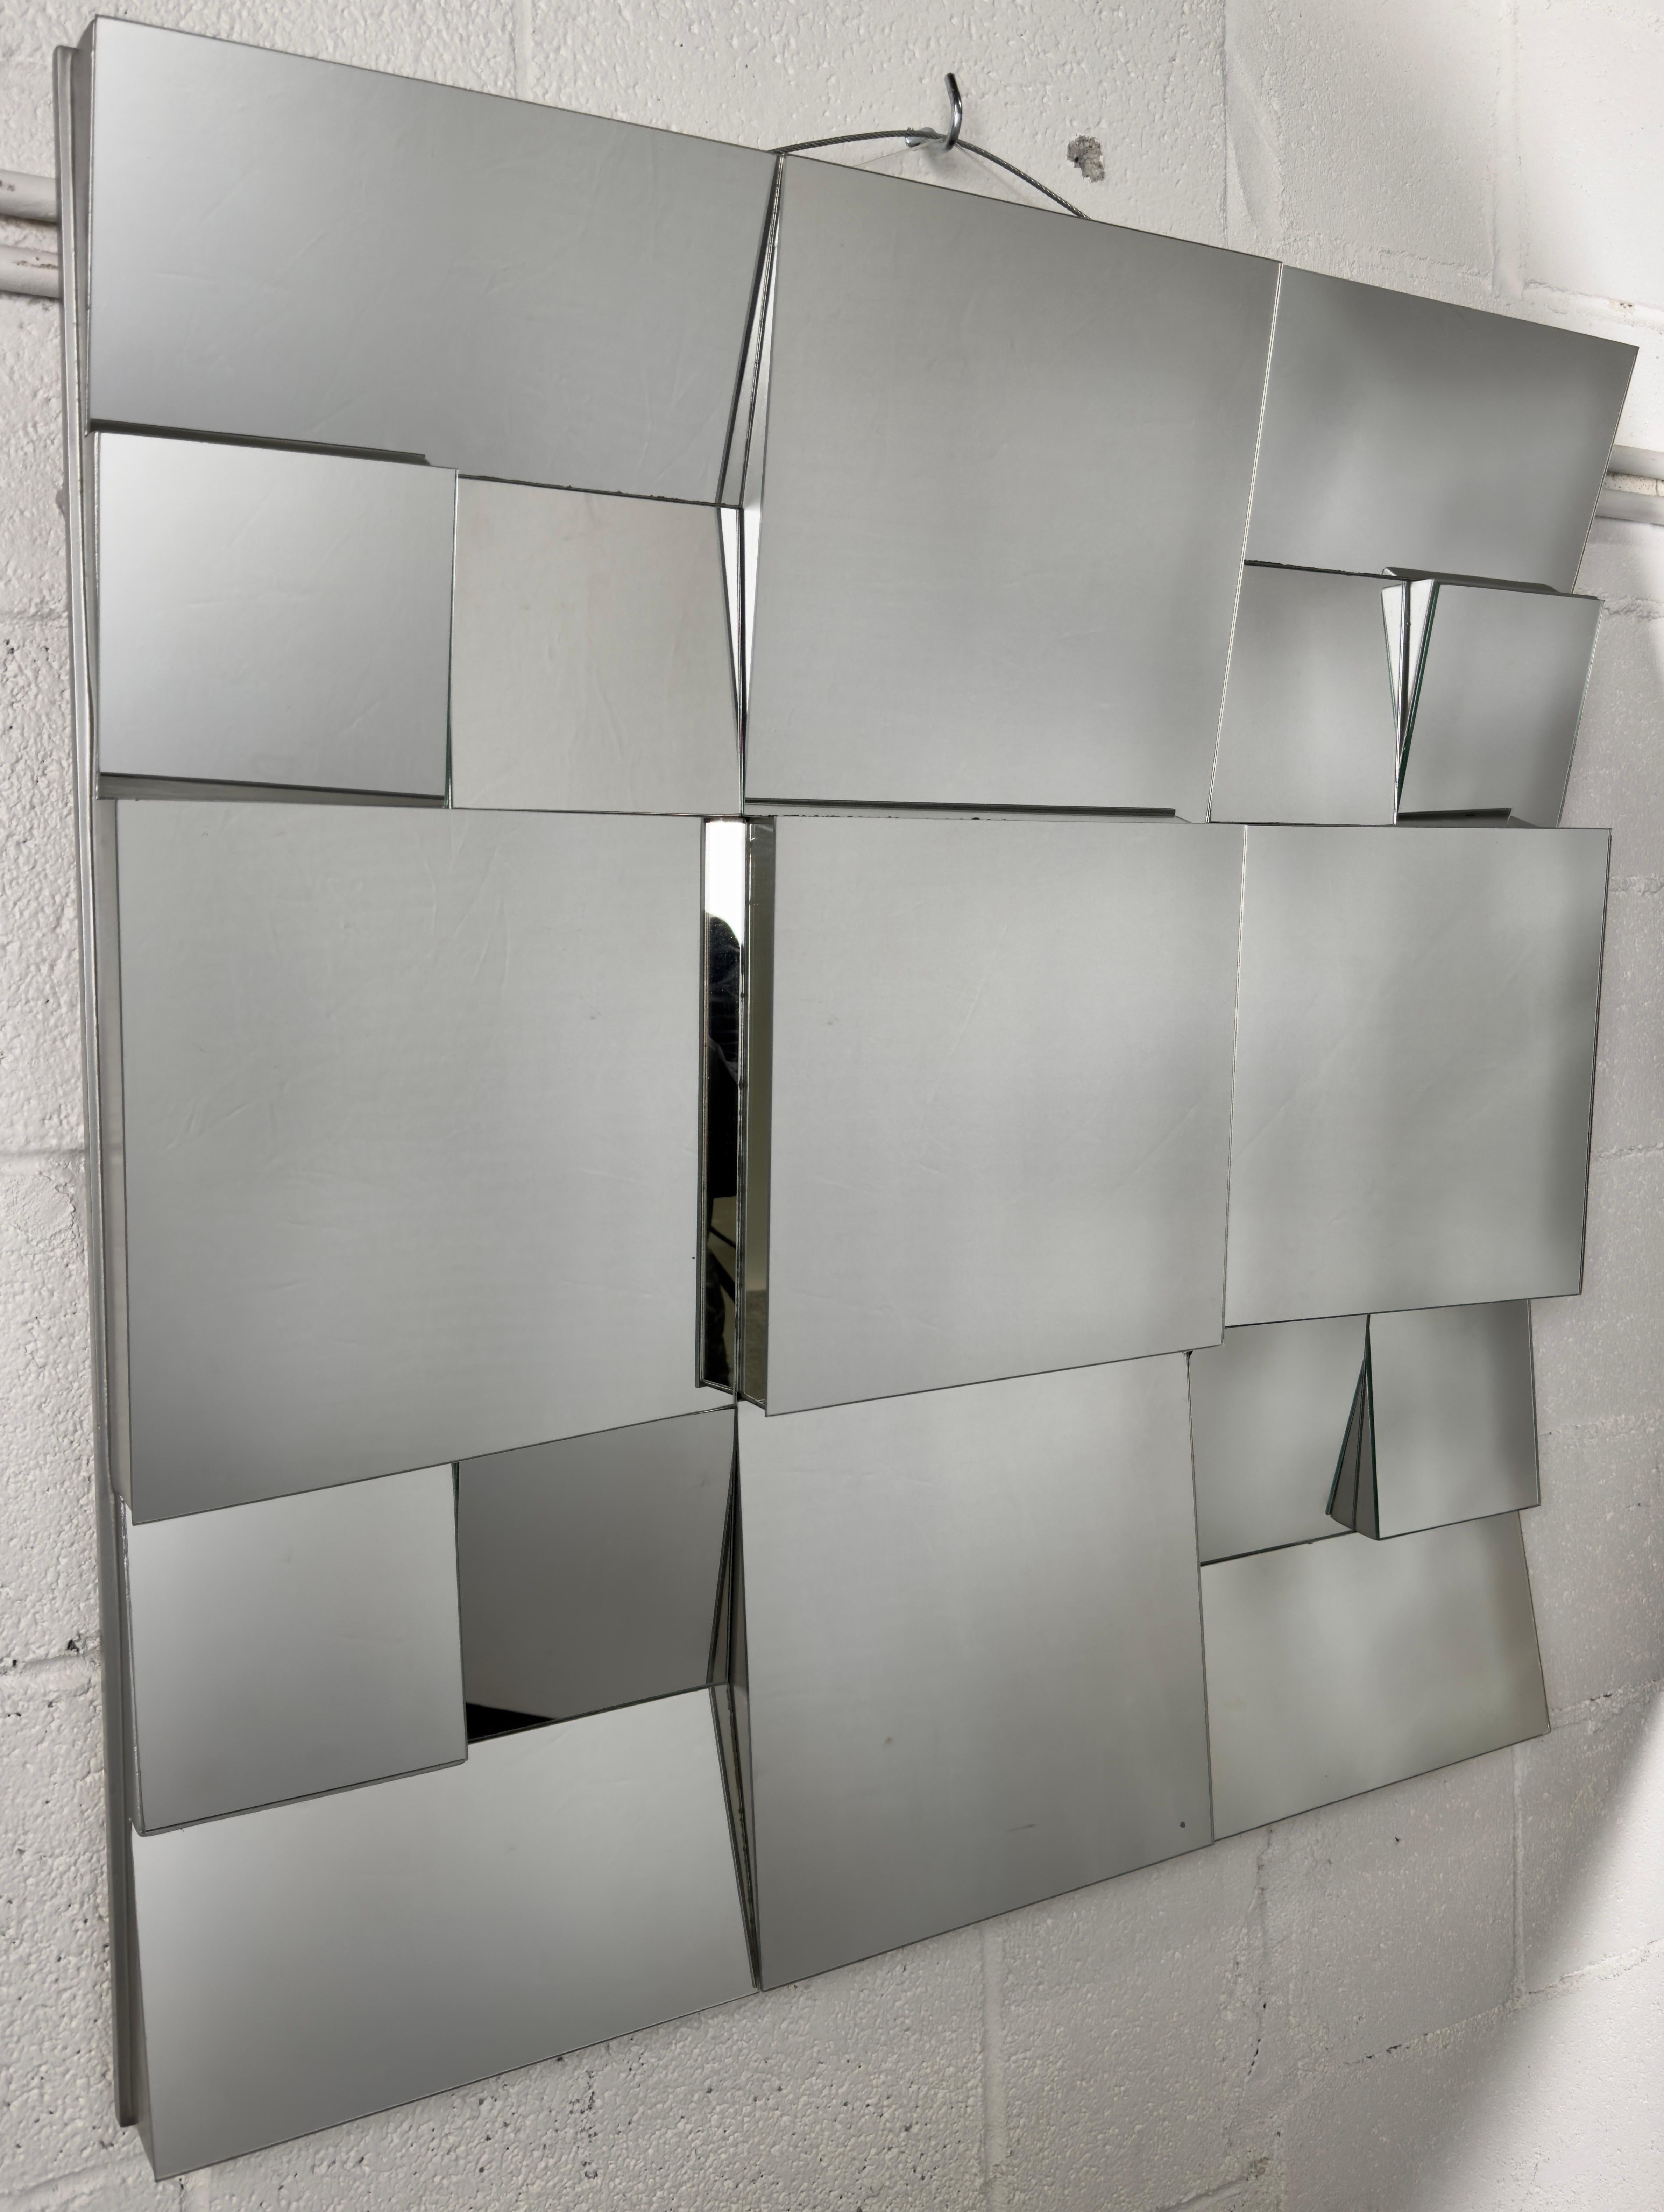 
Ein ikonischer Neal Small (Amerika, 1937)  Schräggestellter Spiegel im kubistischen Design, 1975 von dem visionären amerikanischen Designer entworfen. Jede Facette des Spiegels spiegelt die Meisterschaft von Small wider, während die emaillierte